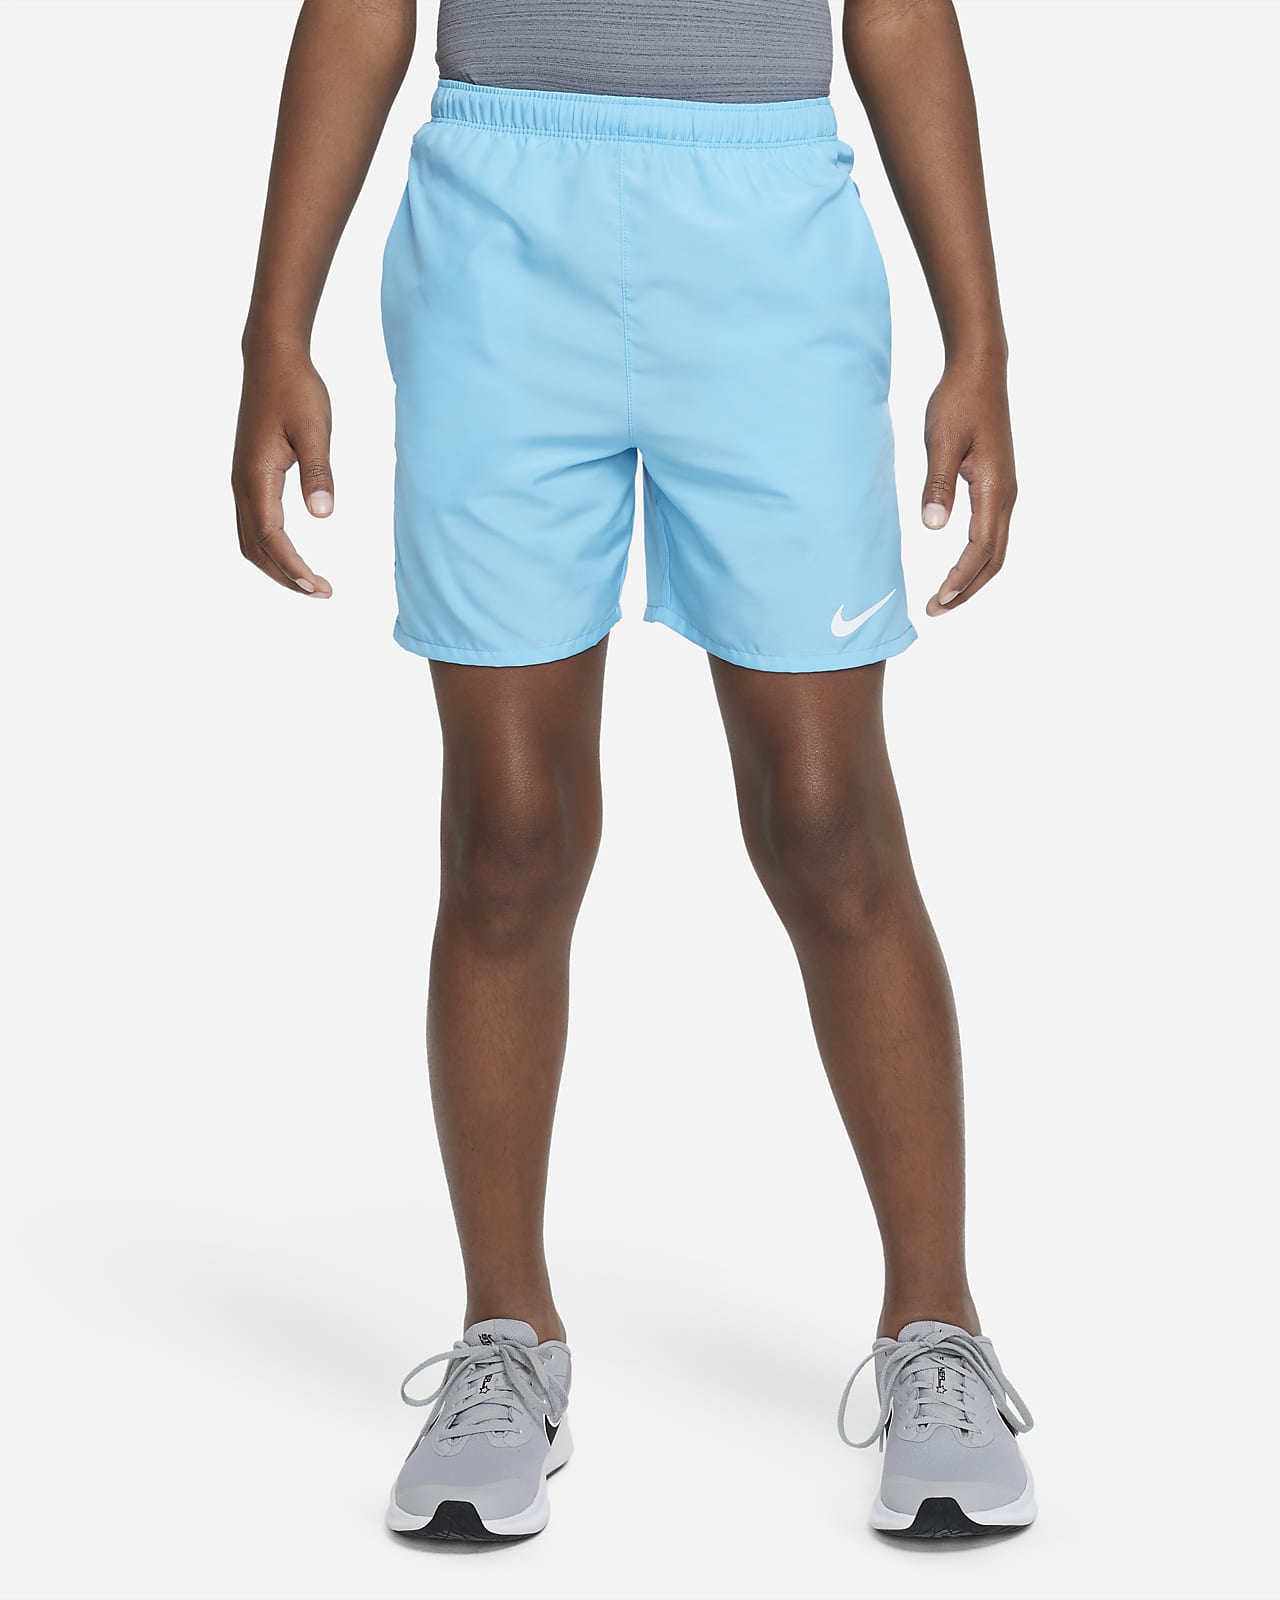 Nike Challenger Older Kids' (Boys') Training Shorts. Nike SK